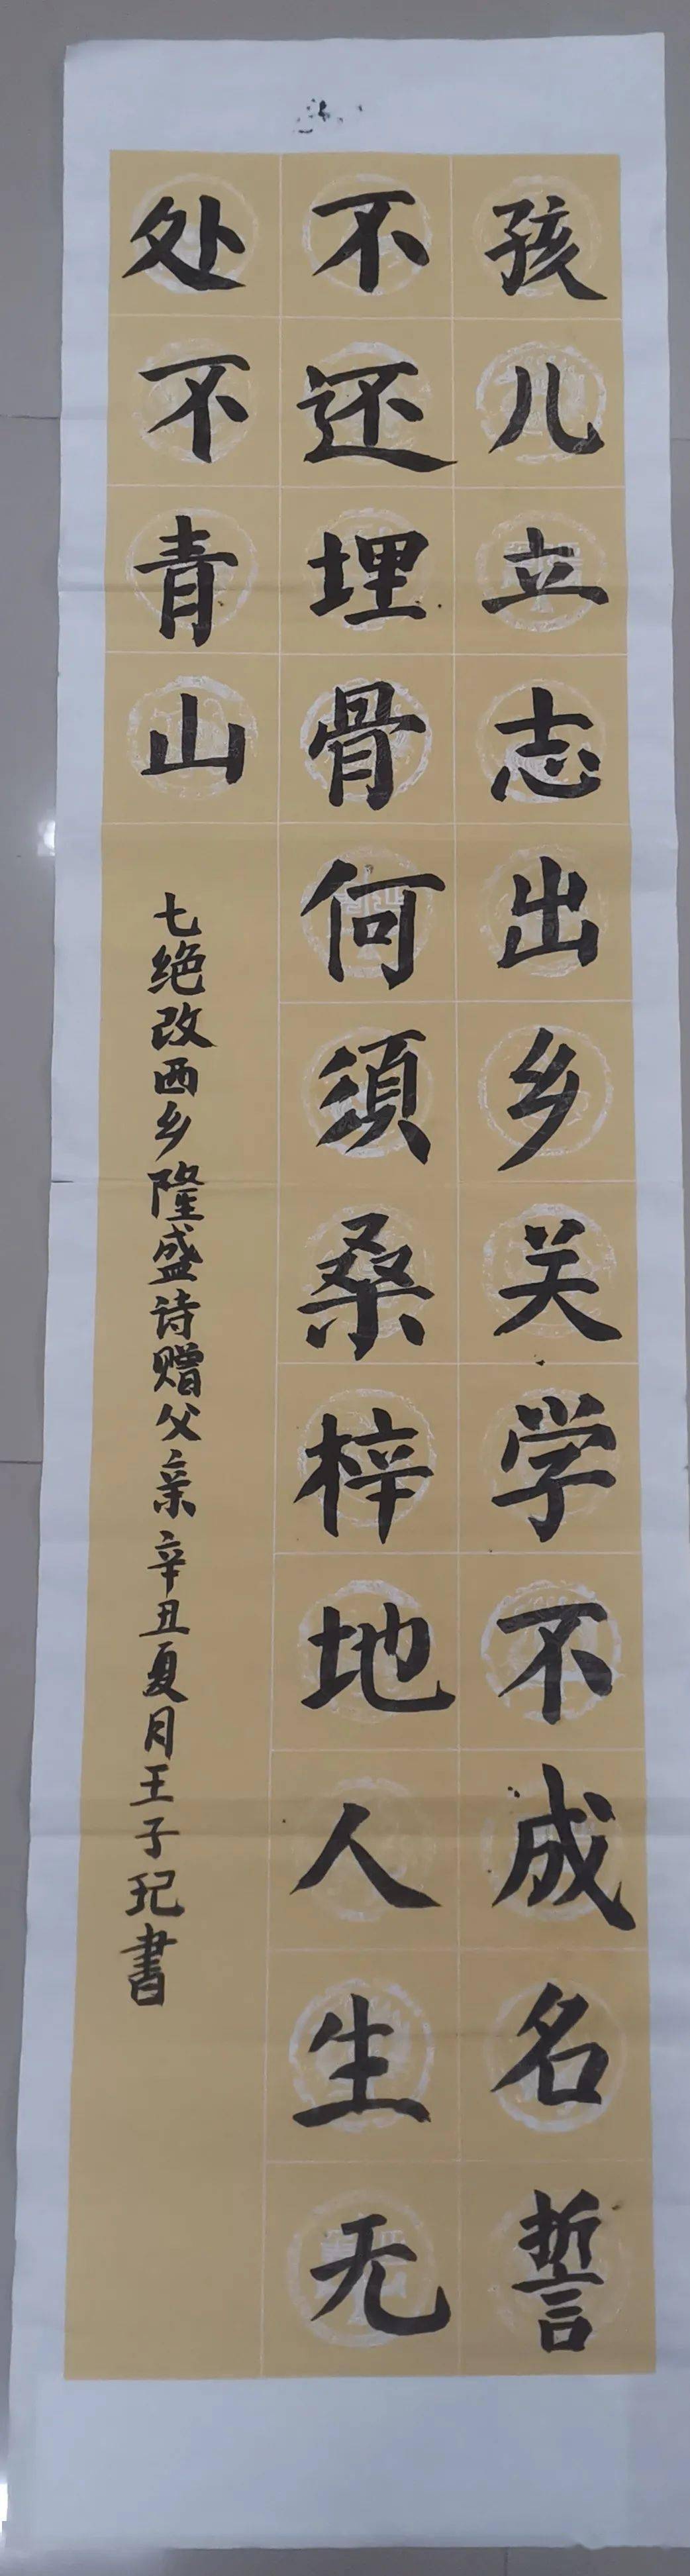 【六一专辑】泾川县"红领巾心向党"红色经典诗词书法作品来喽!